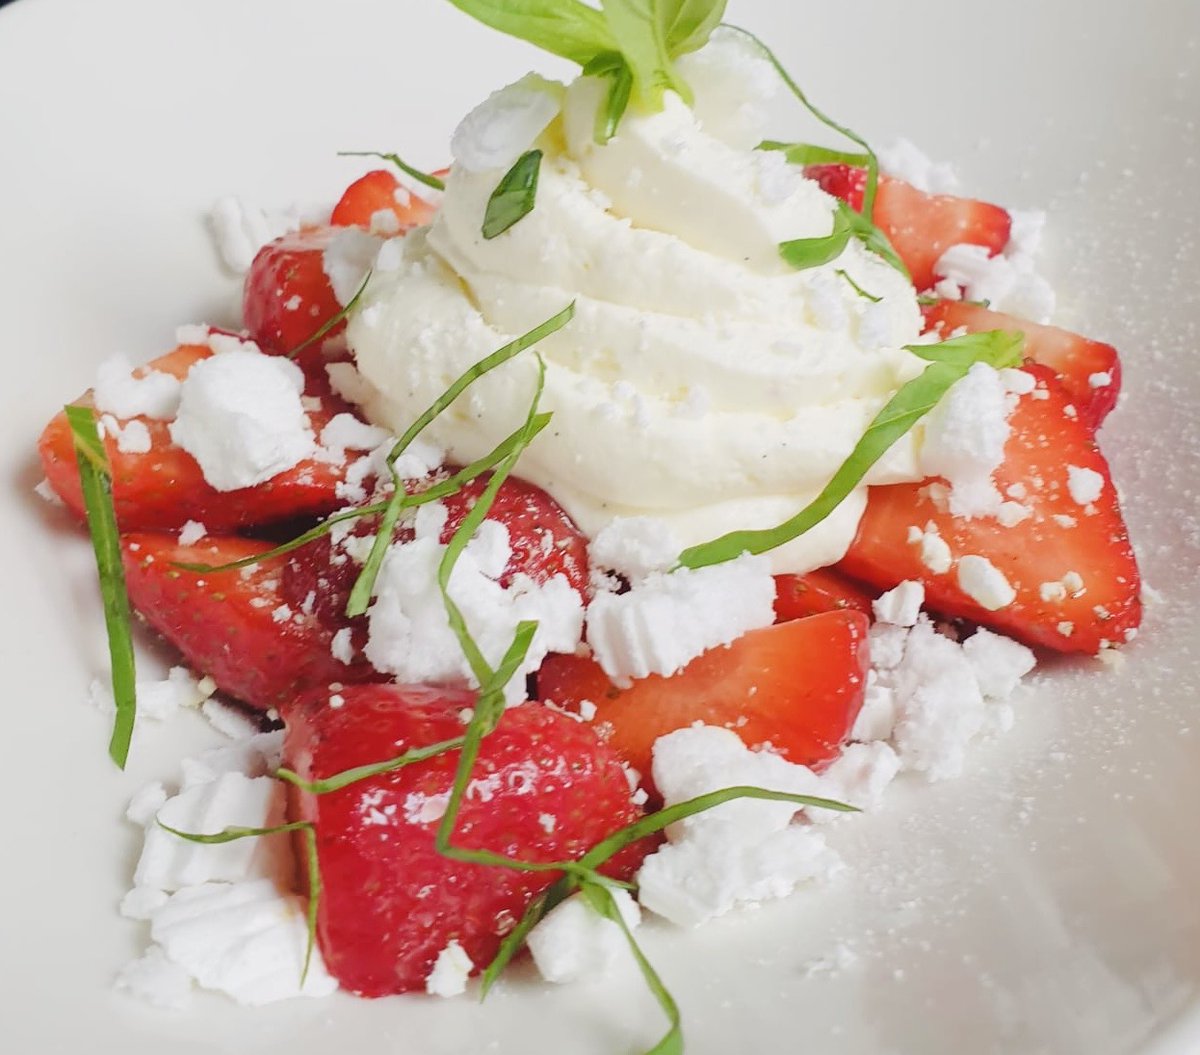 [ #CotedAzurFrance - #restaurantnice ] Les produits de saison sur un nuage de douceurs au pluriel avec le giboulée de fraises à la @PlageBeauRivage Une gourmandise incontournable et de saison! @VisitCotedazur @ExploreNCA